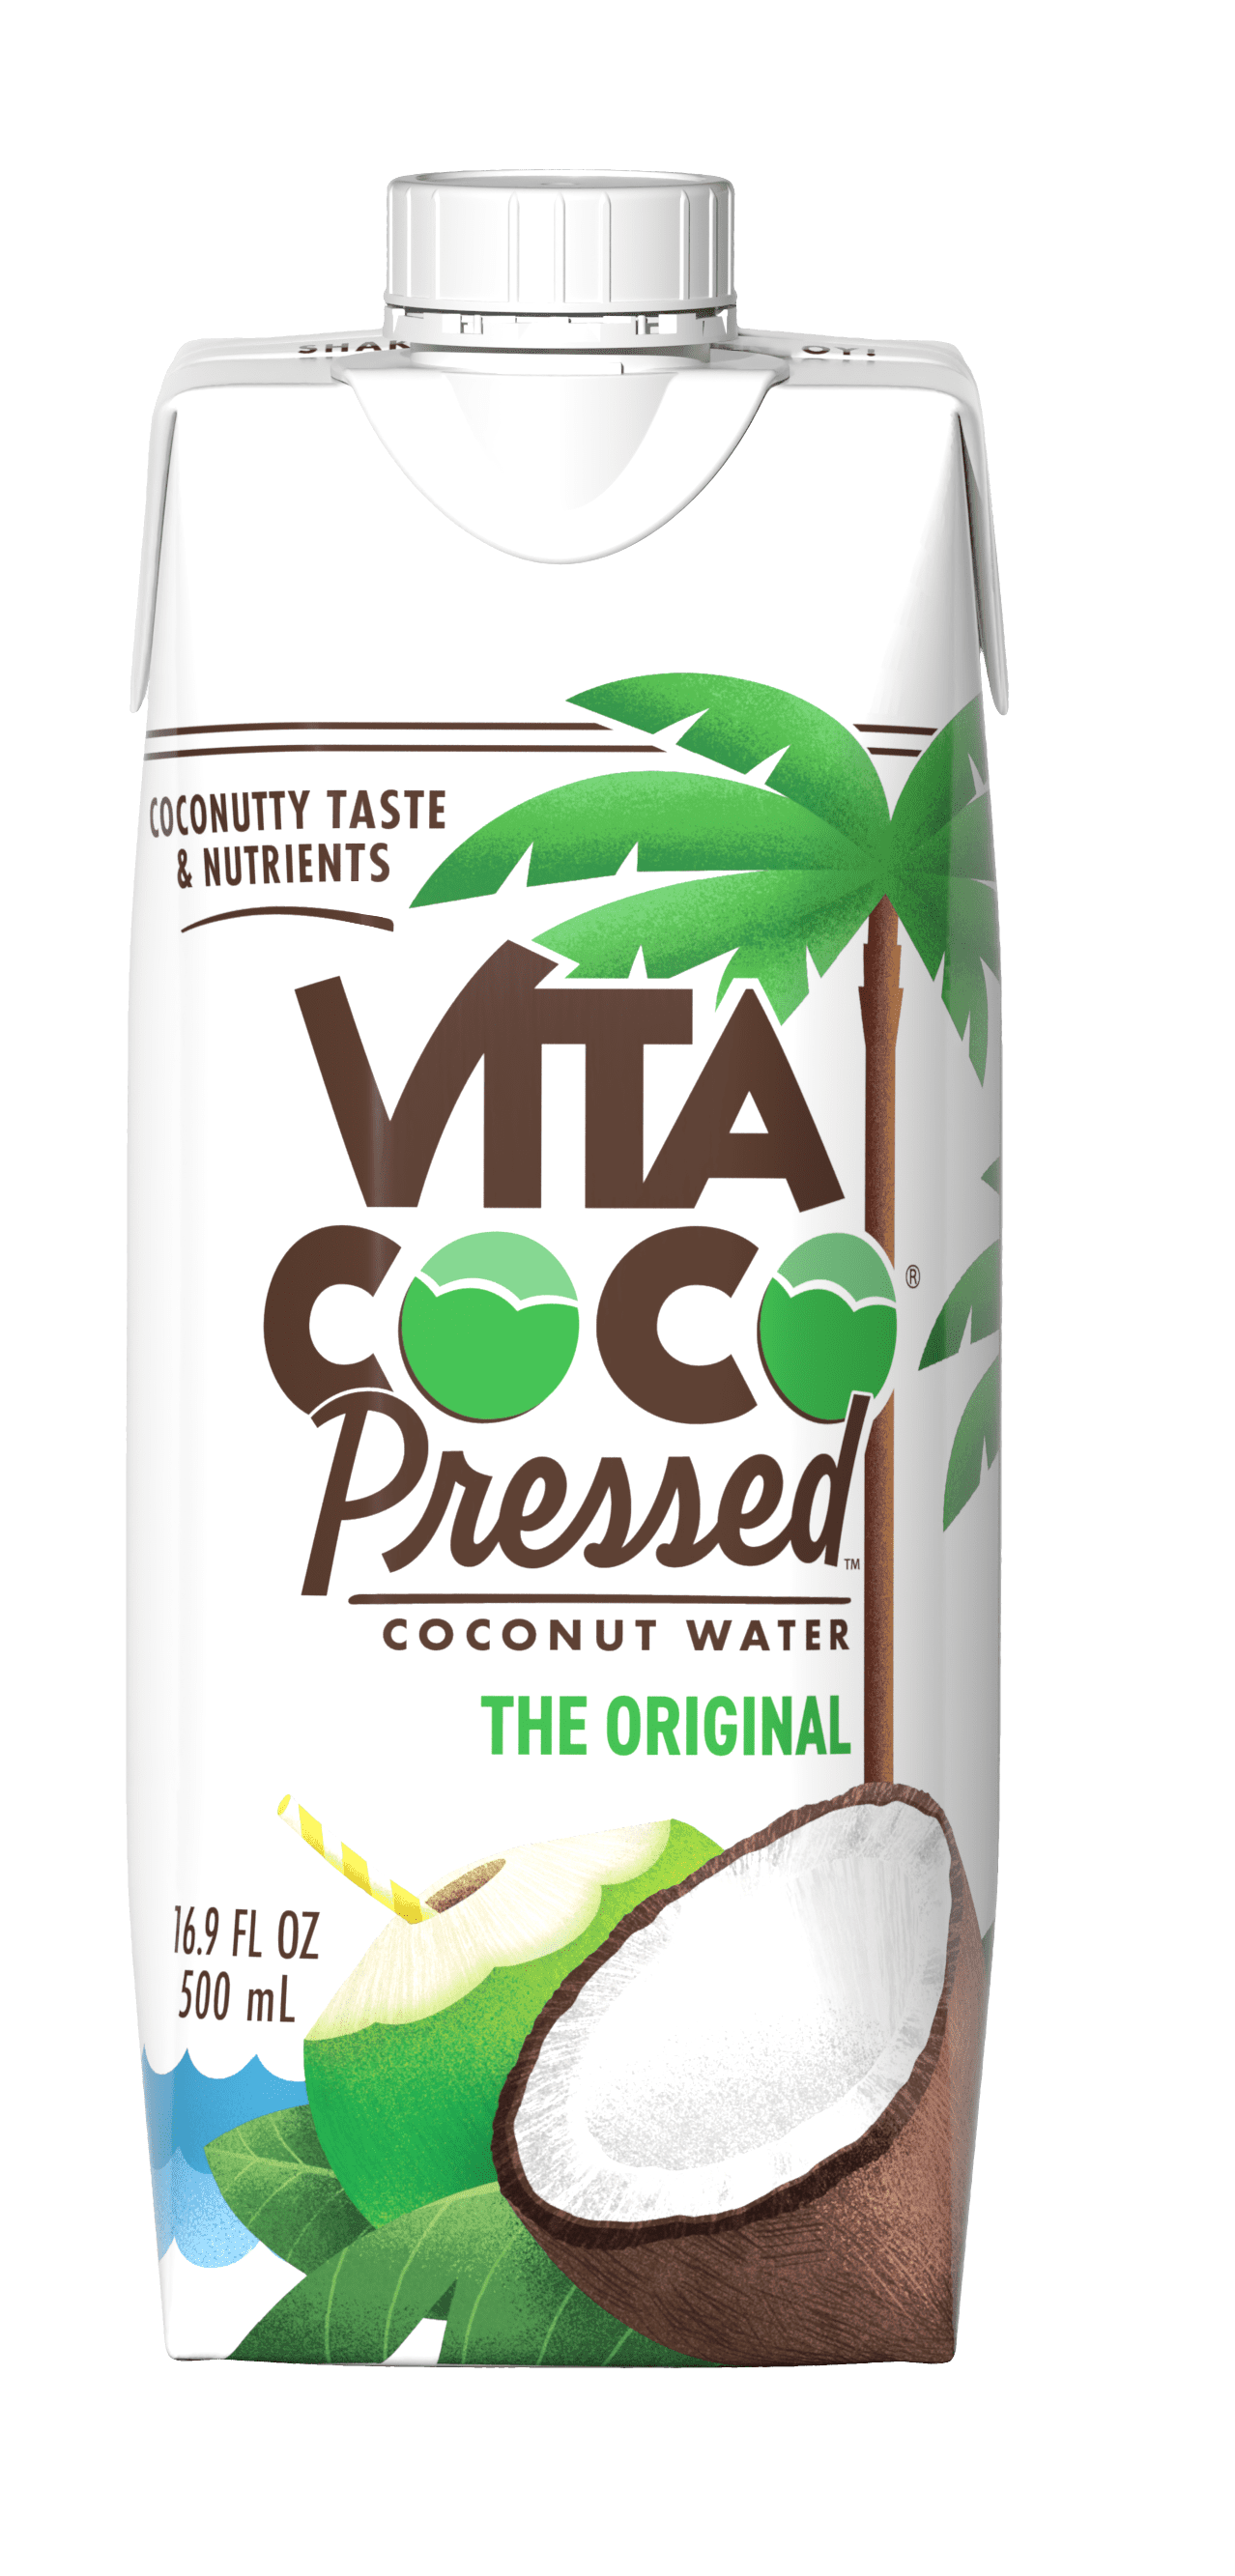 Vita Coco Pressed Coconut Water, Pressed Coconut, 16.9 fl oz Tetra